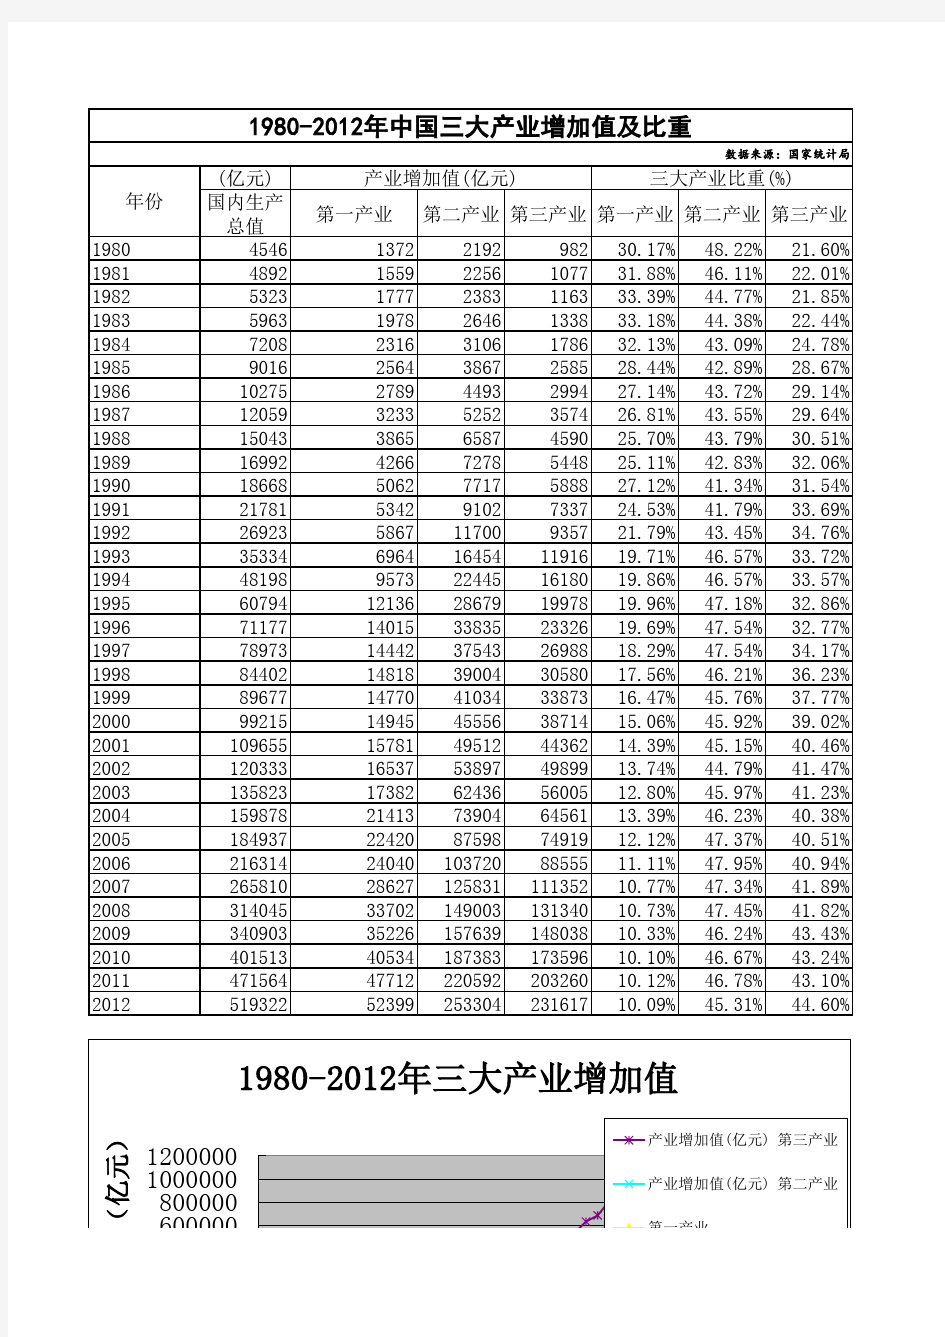 1980-2012年中国三大产业增加值及比重